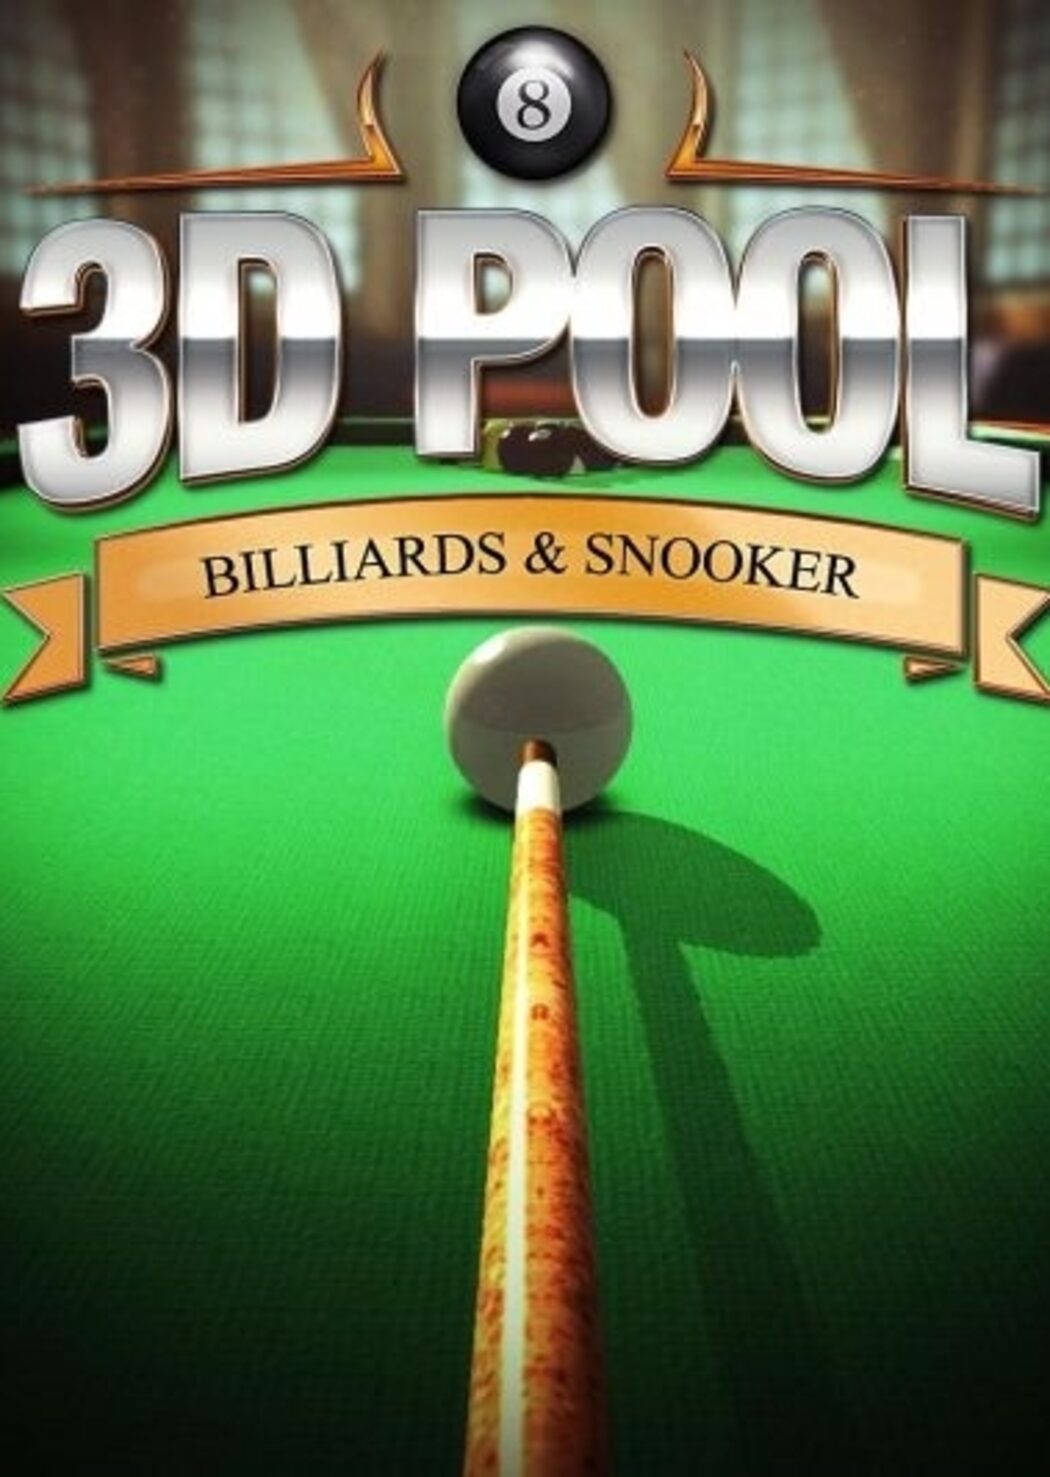 бильярд 3d pool steam фото 70